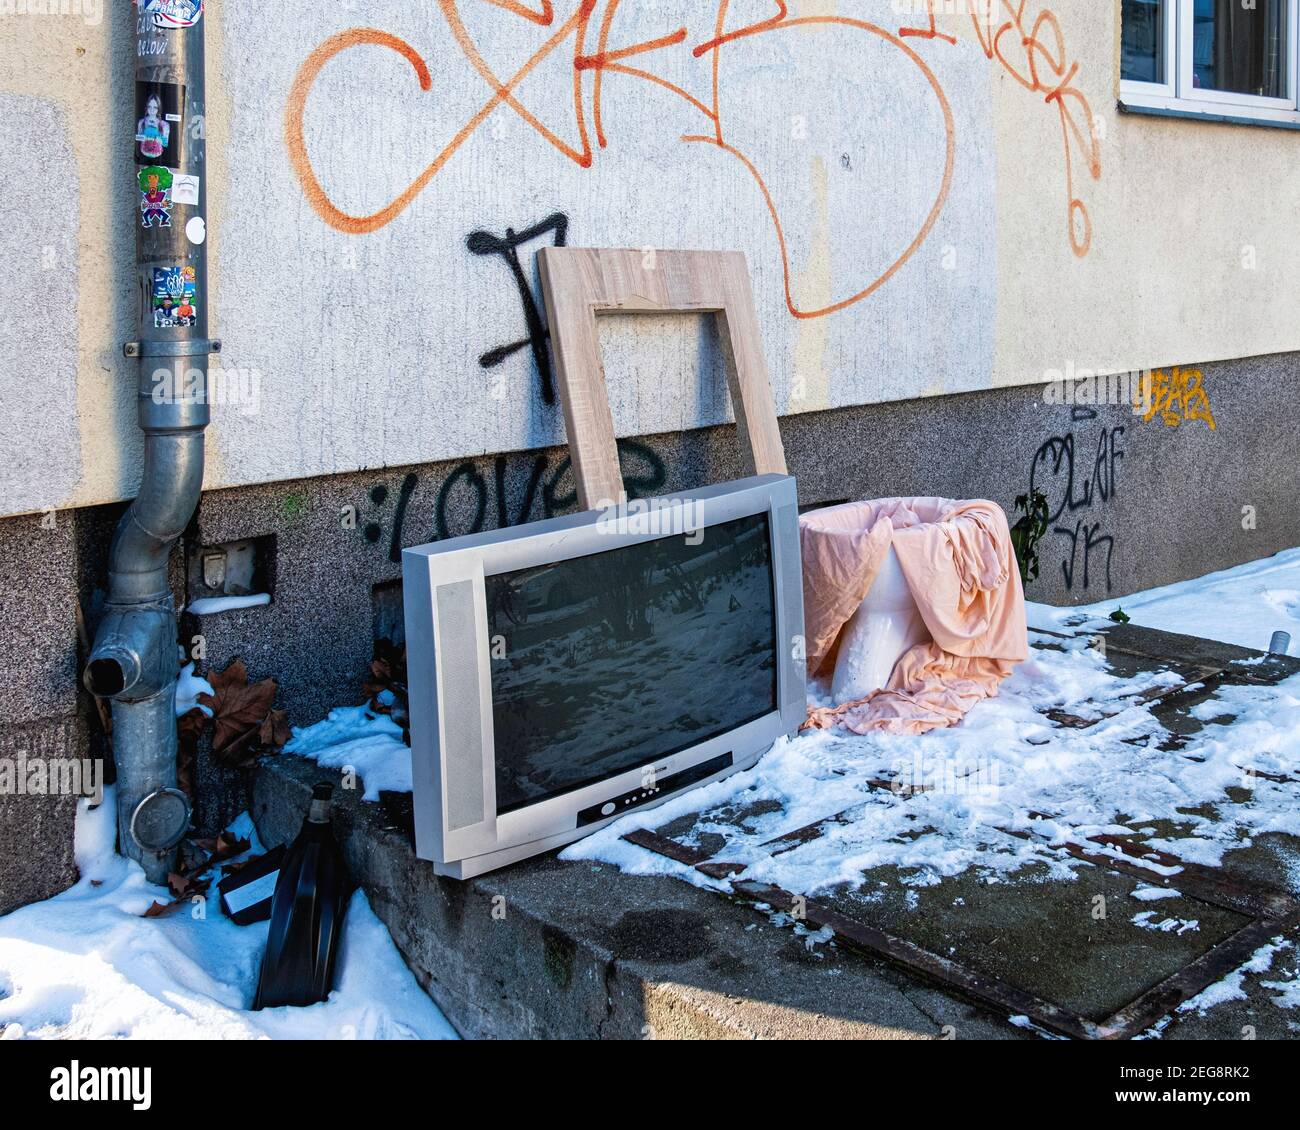 Télévision et toilettes en porcelaine jetée et abandonnée sur un couvert de neige Chaussée urbaine à Mitte, Berlin, Allemagne Banque D'Images